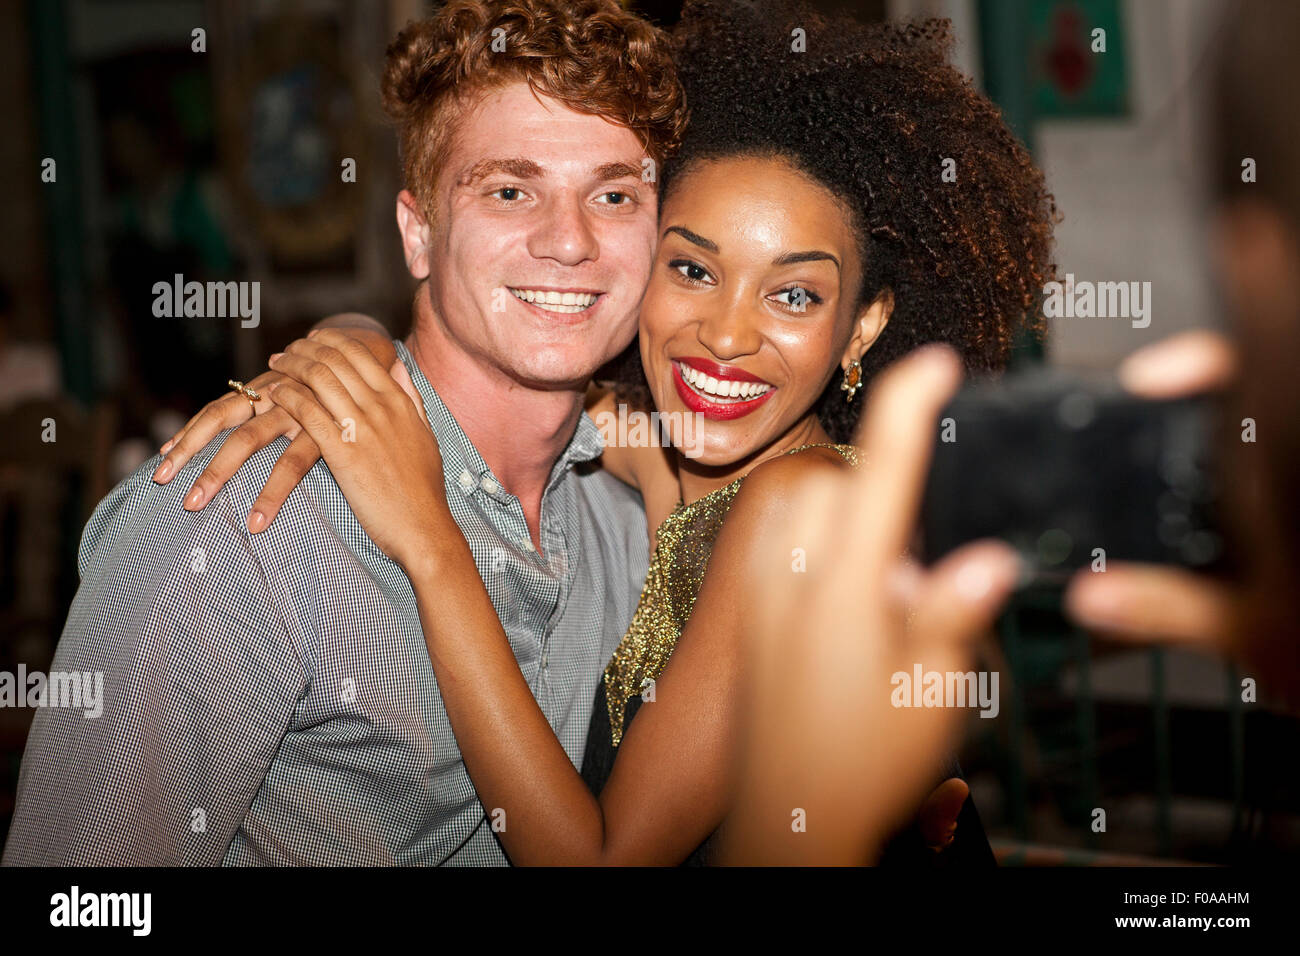 Jeune couple ayant pris en photo en bar, smiling Banque D'Images